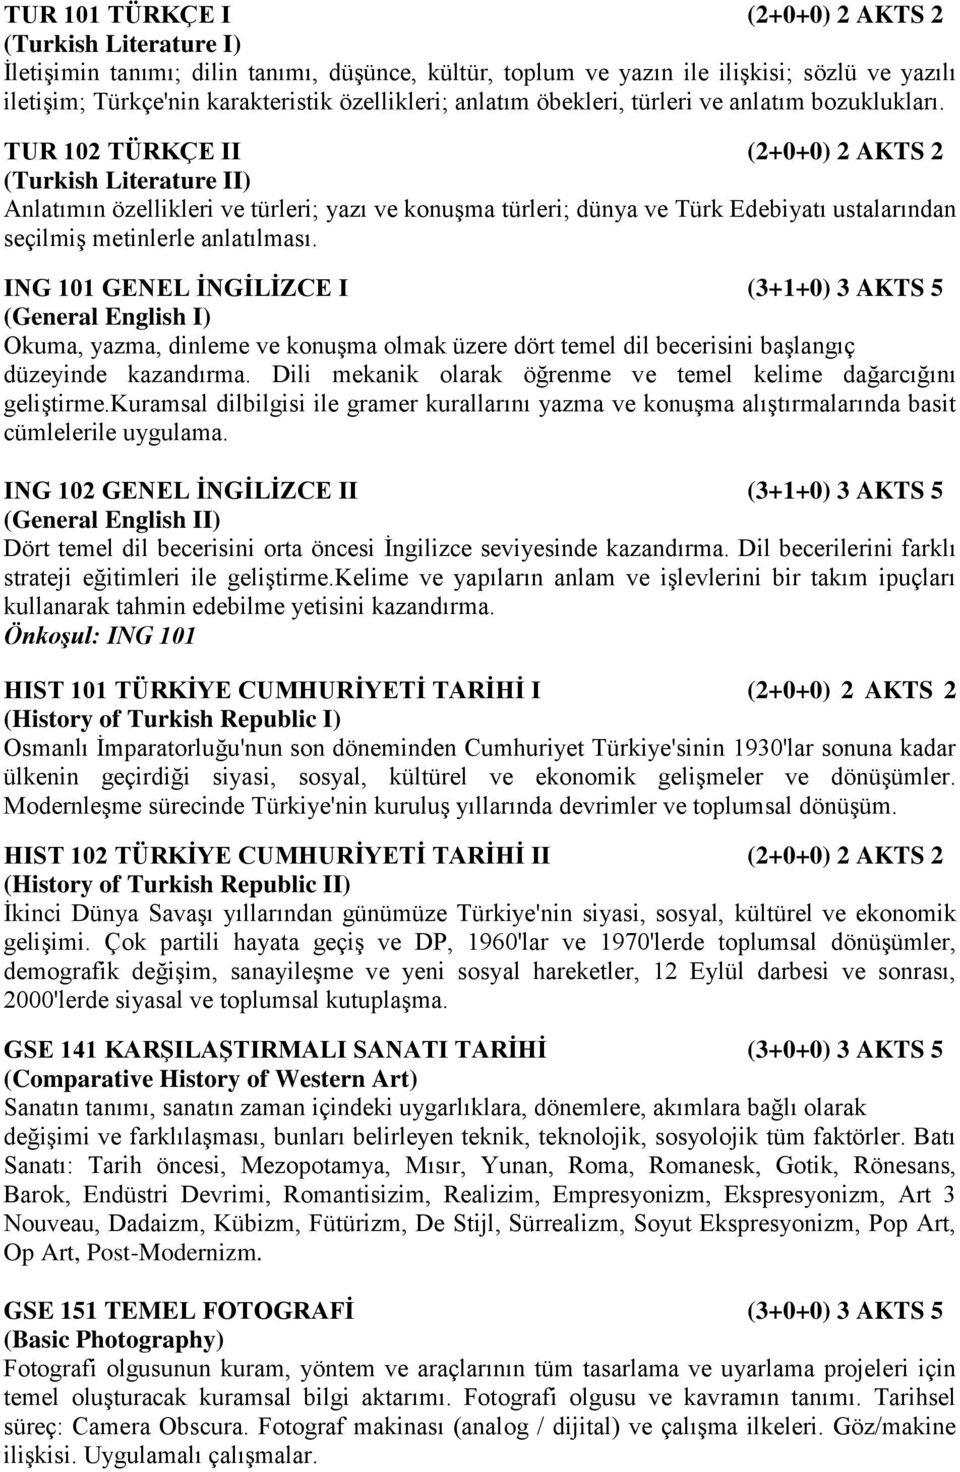 TUR 102 TÜRKÇE II (2+0+0) 2 AKTS 2 (Turkish Literature II) Anlatımın özellikleri ve türleri; yazı ve konuşma türleri; dünya ve Türk Edebiyatı ustalarından seçilmiş metinlerle anlatılması.